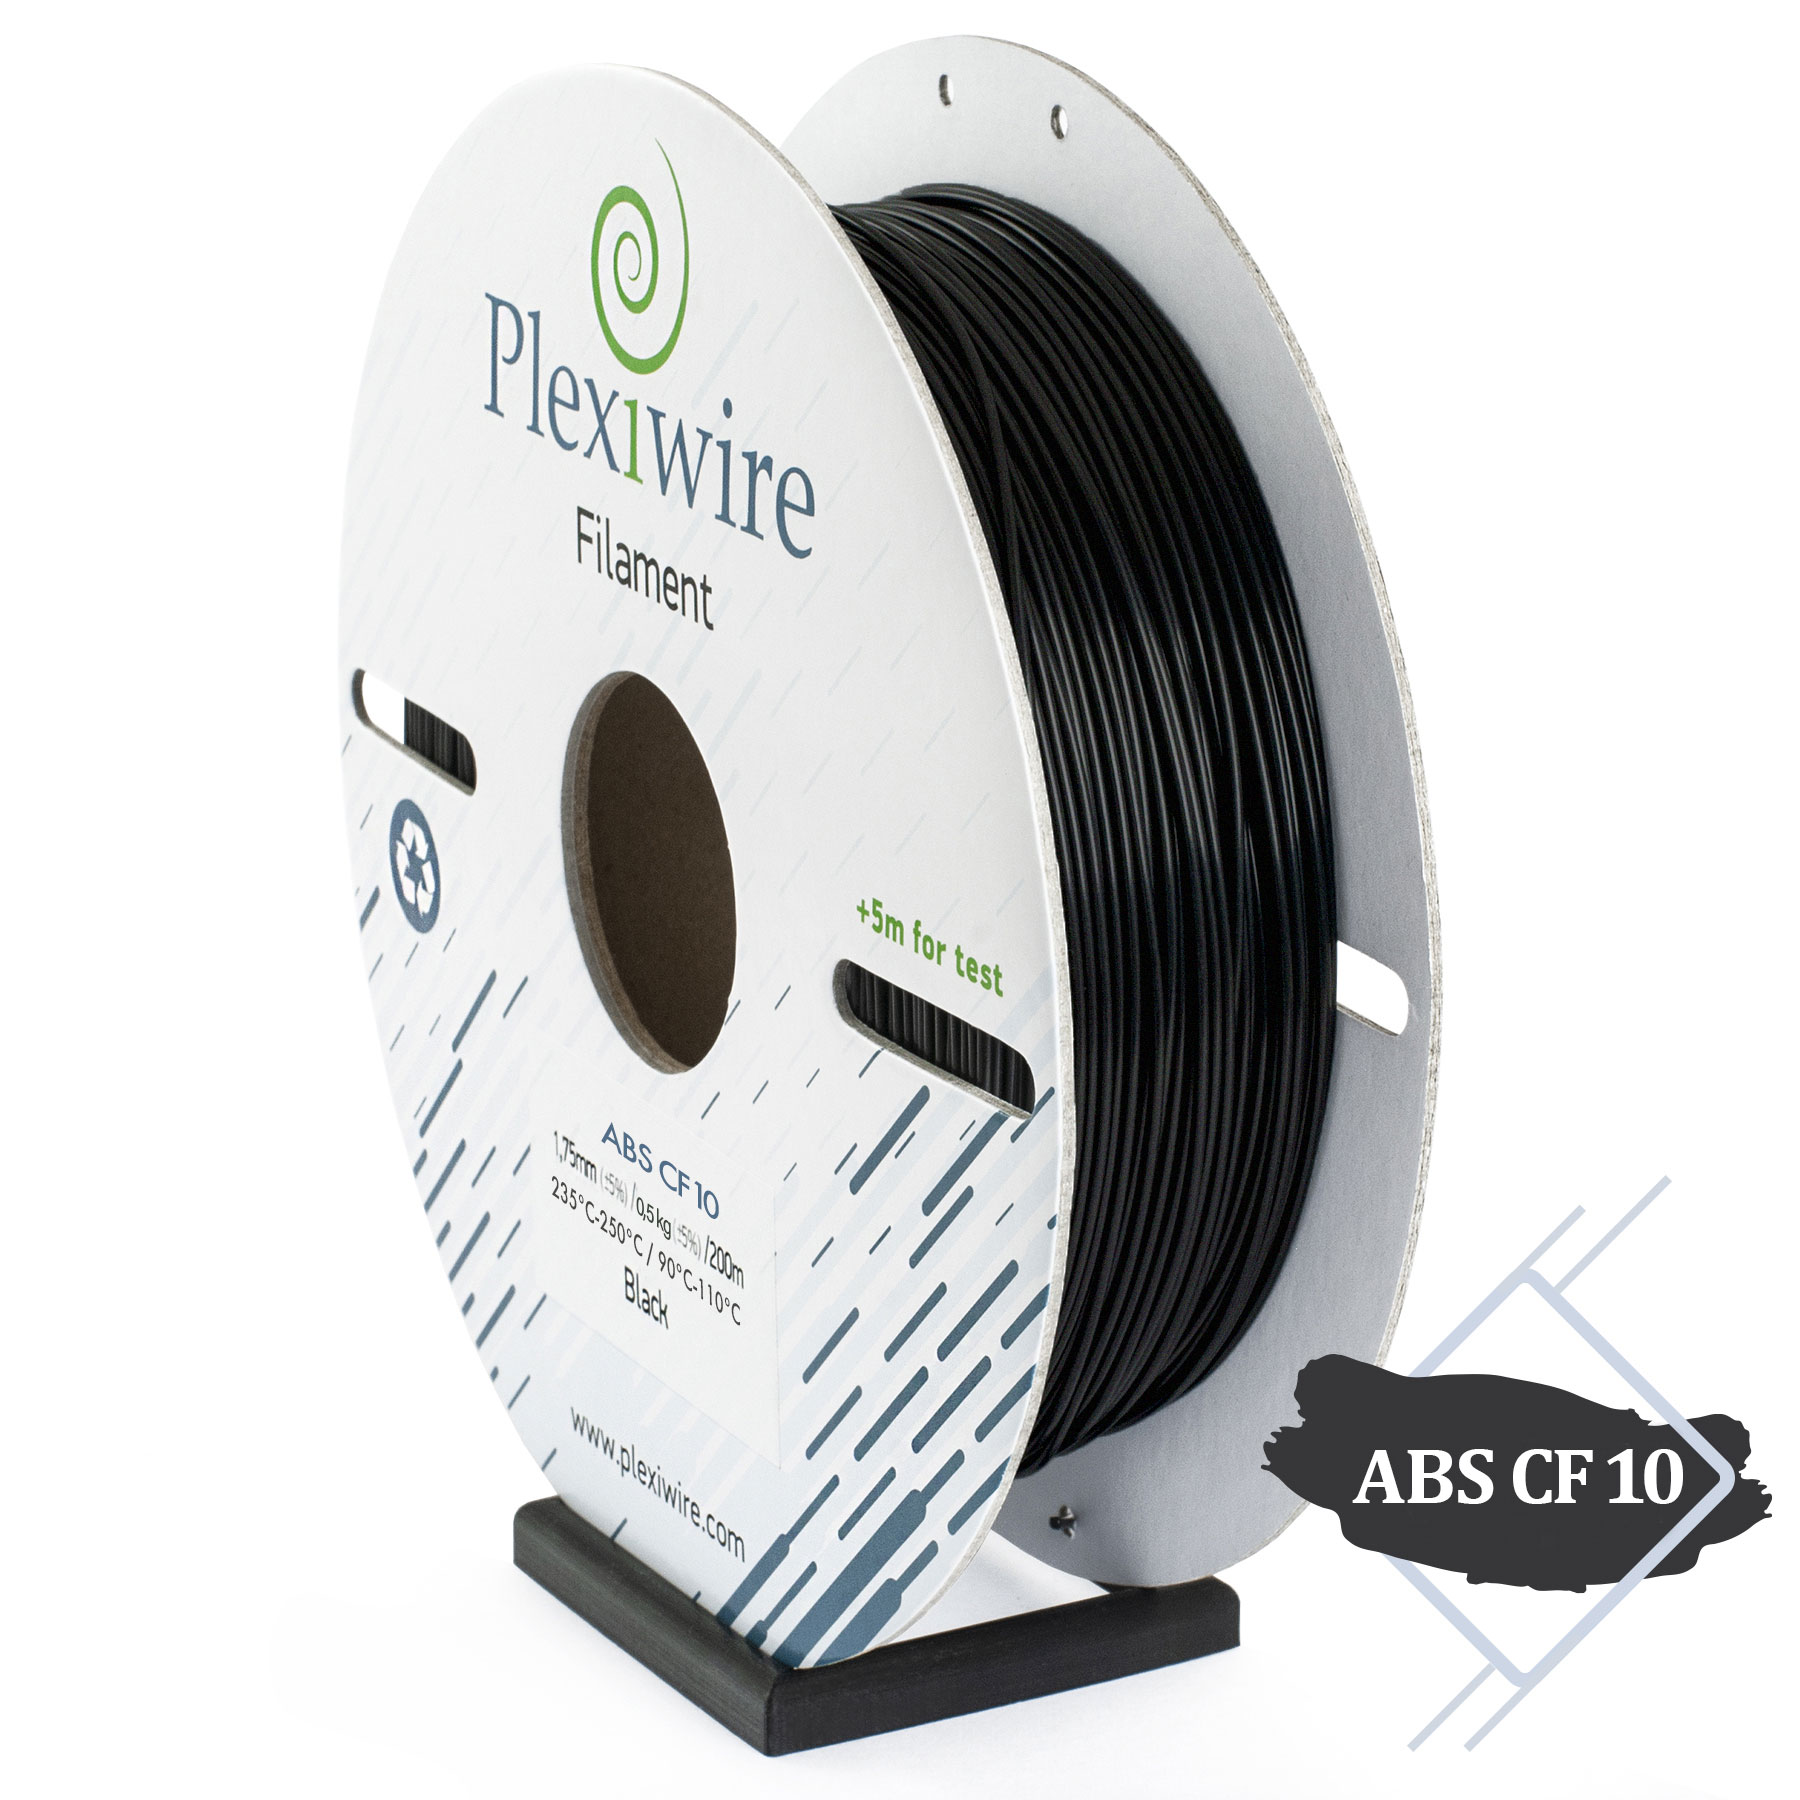 Plexiwire filament ABS CF10 - це стандартний ABS із додаванням 10% карбону